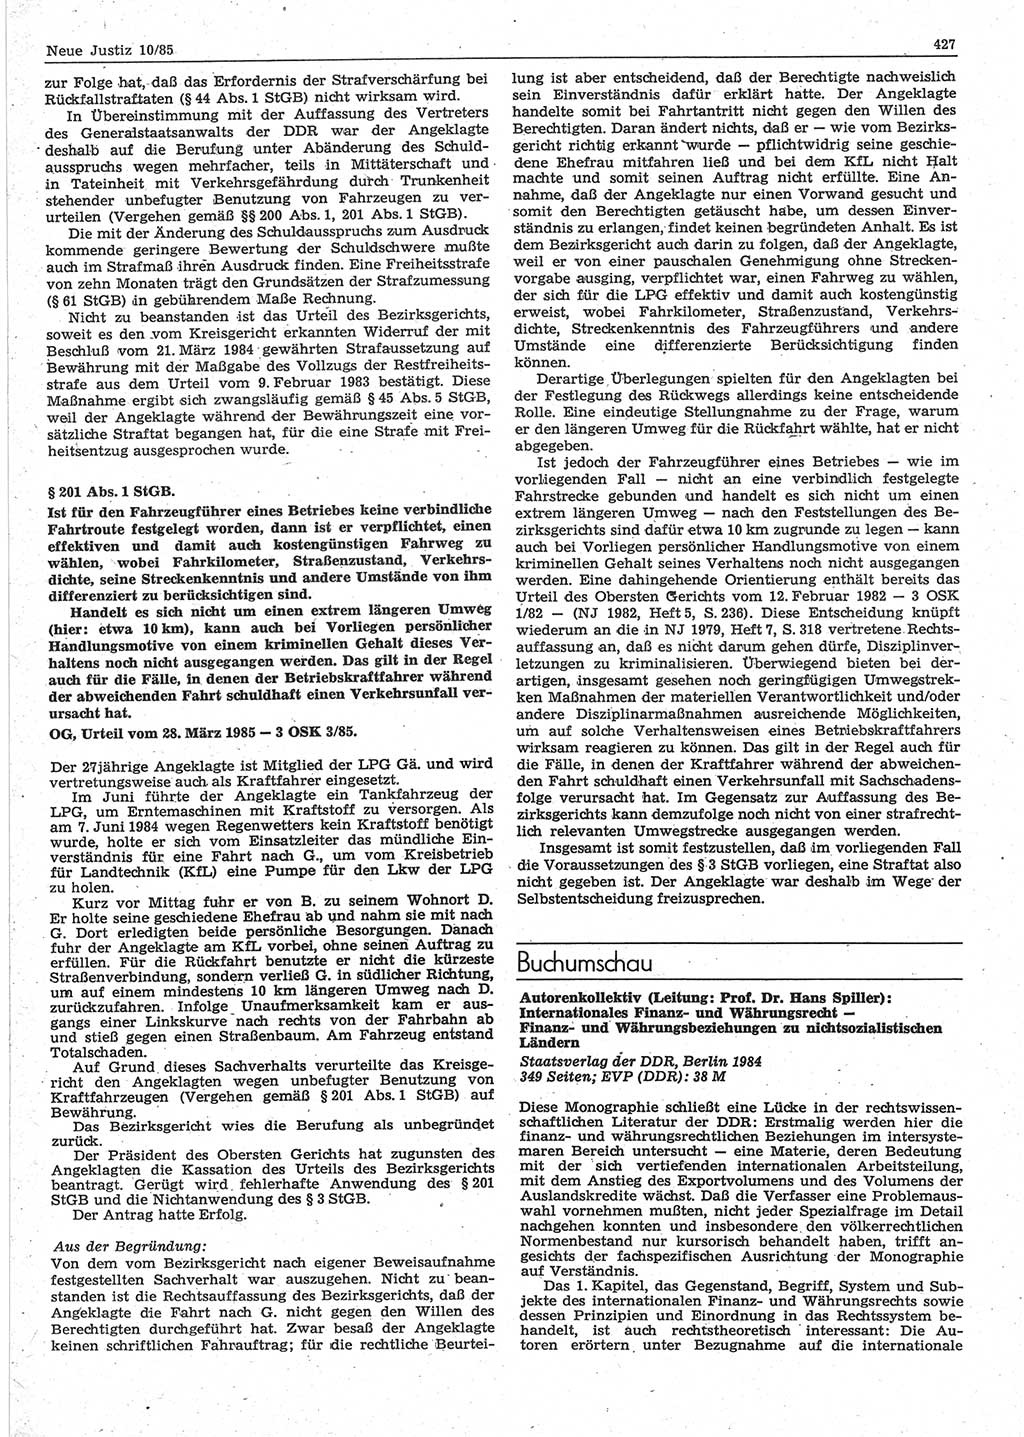 Neue Justiz (NJ), Zeitschrift für sozialistisches Recht und Gesetzlichkeit [Deutsche Demokratische Republik (DDR)], 39. Jahrgang 1985, Seite 427 (NJ DDR 1985, S. 427)